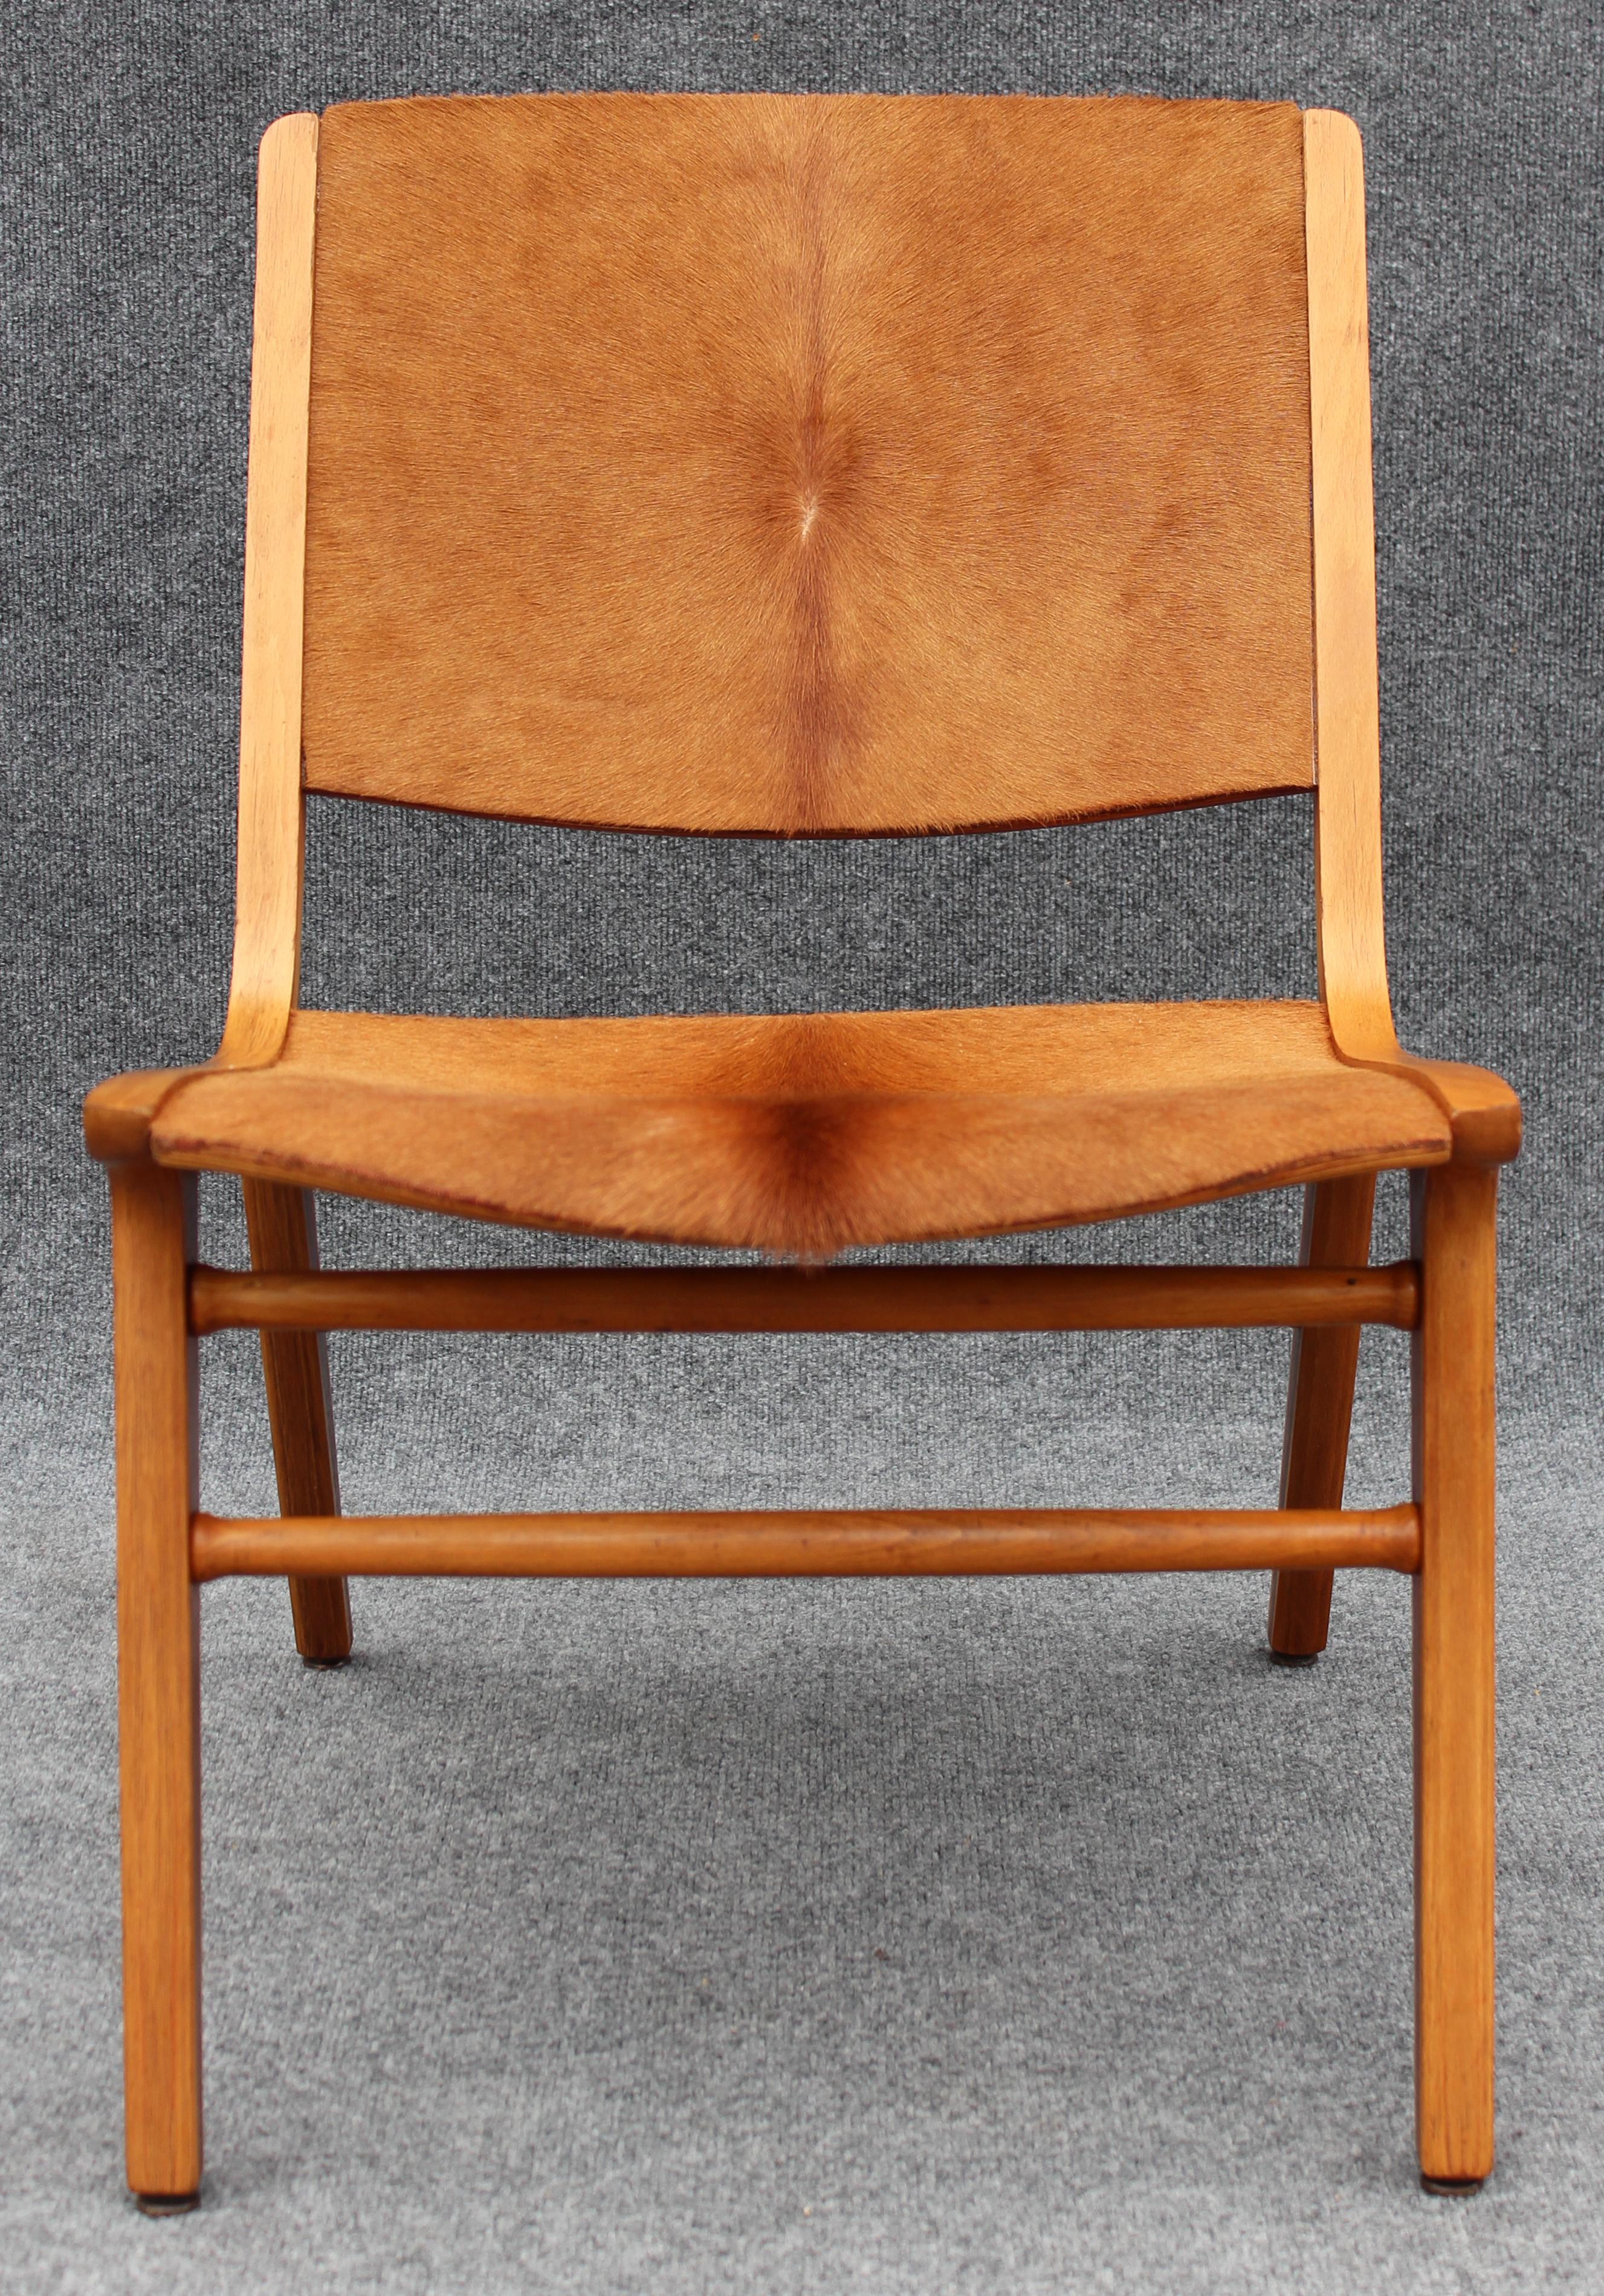 Der von zwei der bekanntesten und von der Kritik gefeierten dänischen Designer entworfene Stuhl Ax wurde von Peter Hvidt in Zusammenarbeit mit Orla Molgaard Nielsen für die Produktion durch Fritz Hansen zum Leben erweckt. Dieser Stuhl ist von der